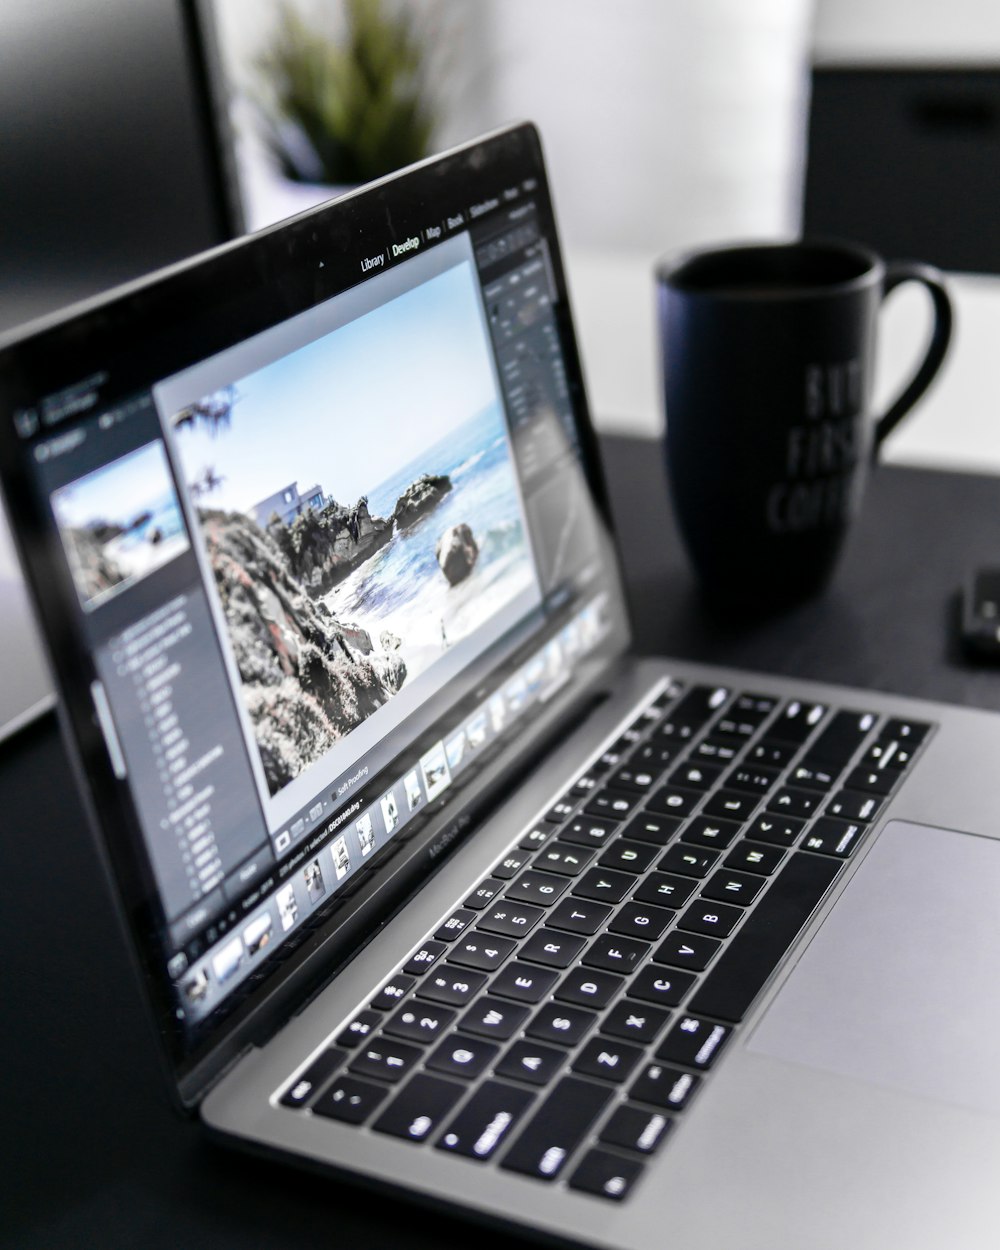 MacBook Pro encendido en el escritorio